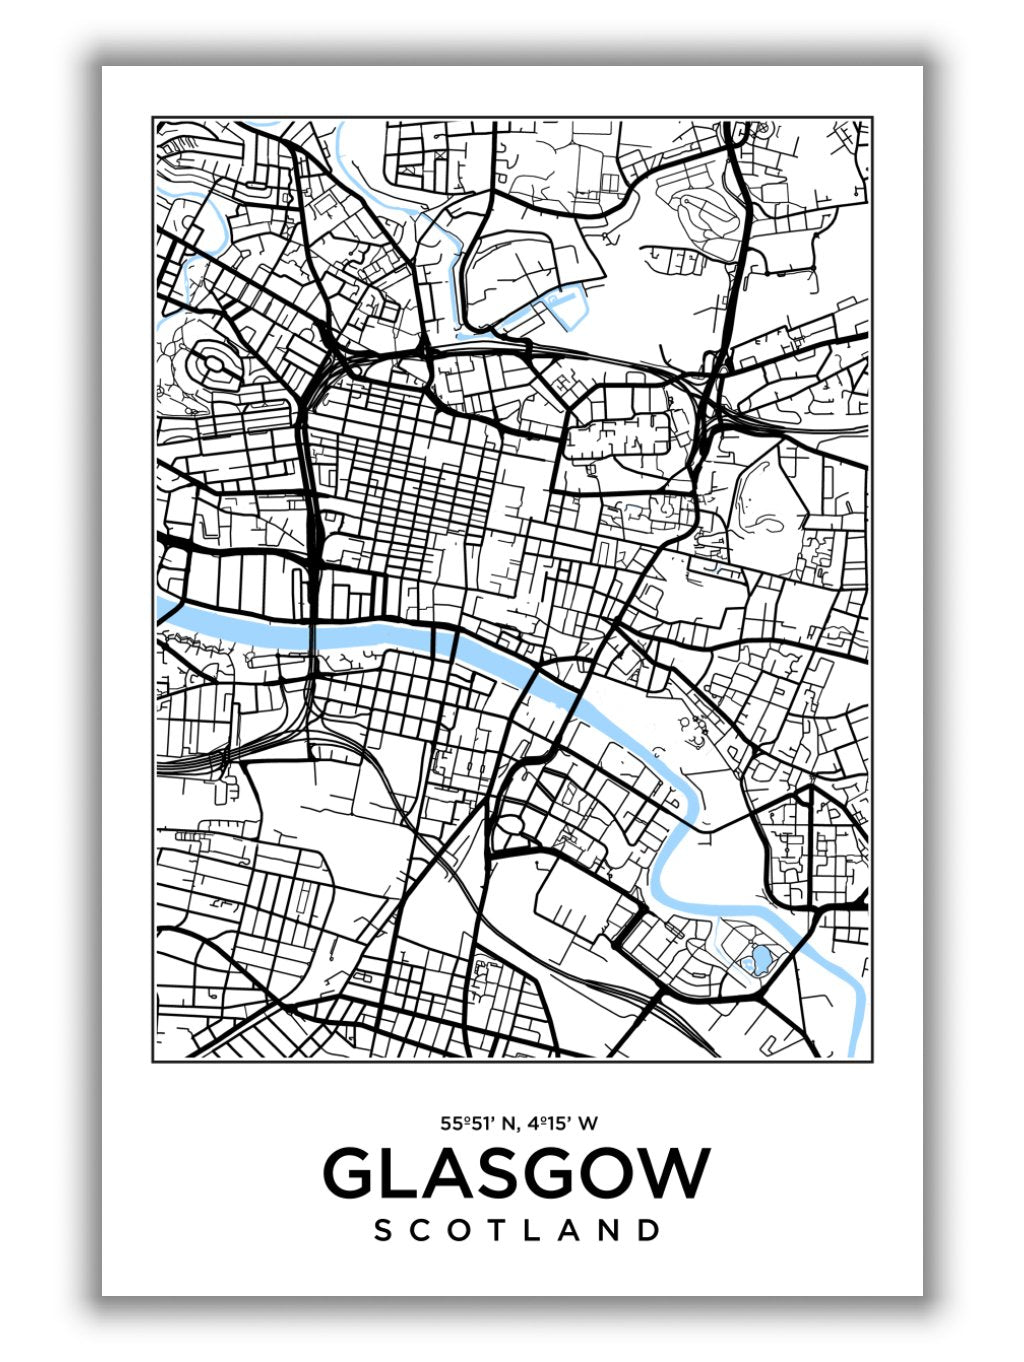 Map of Glasgow Scotland